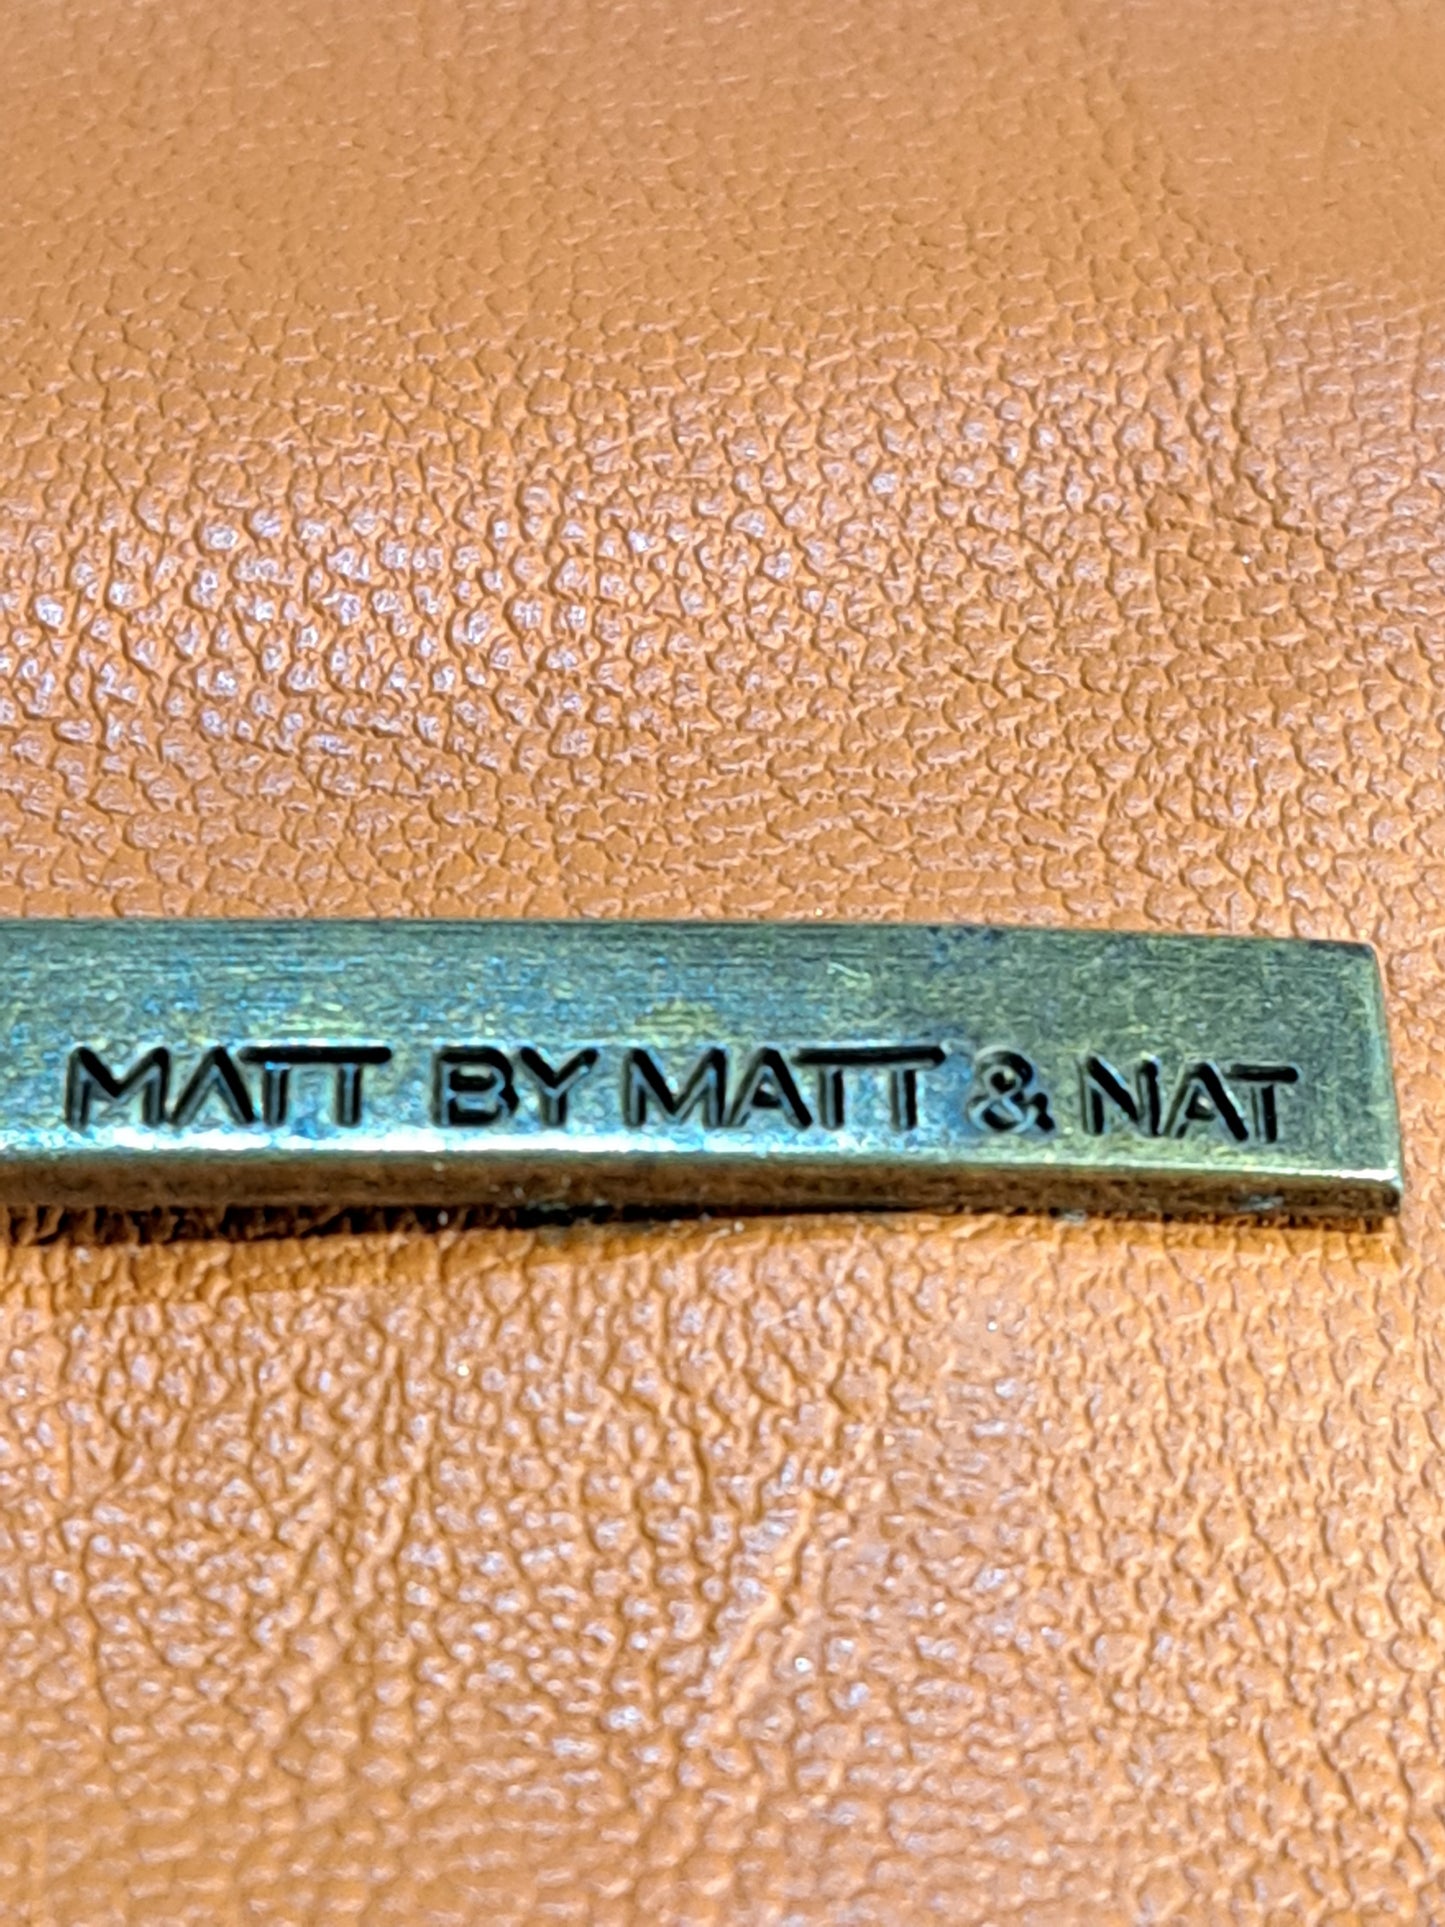 Matt & Nat bag